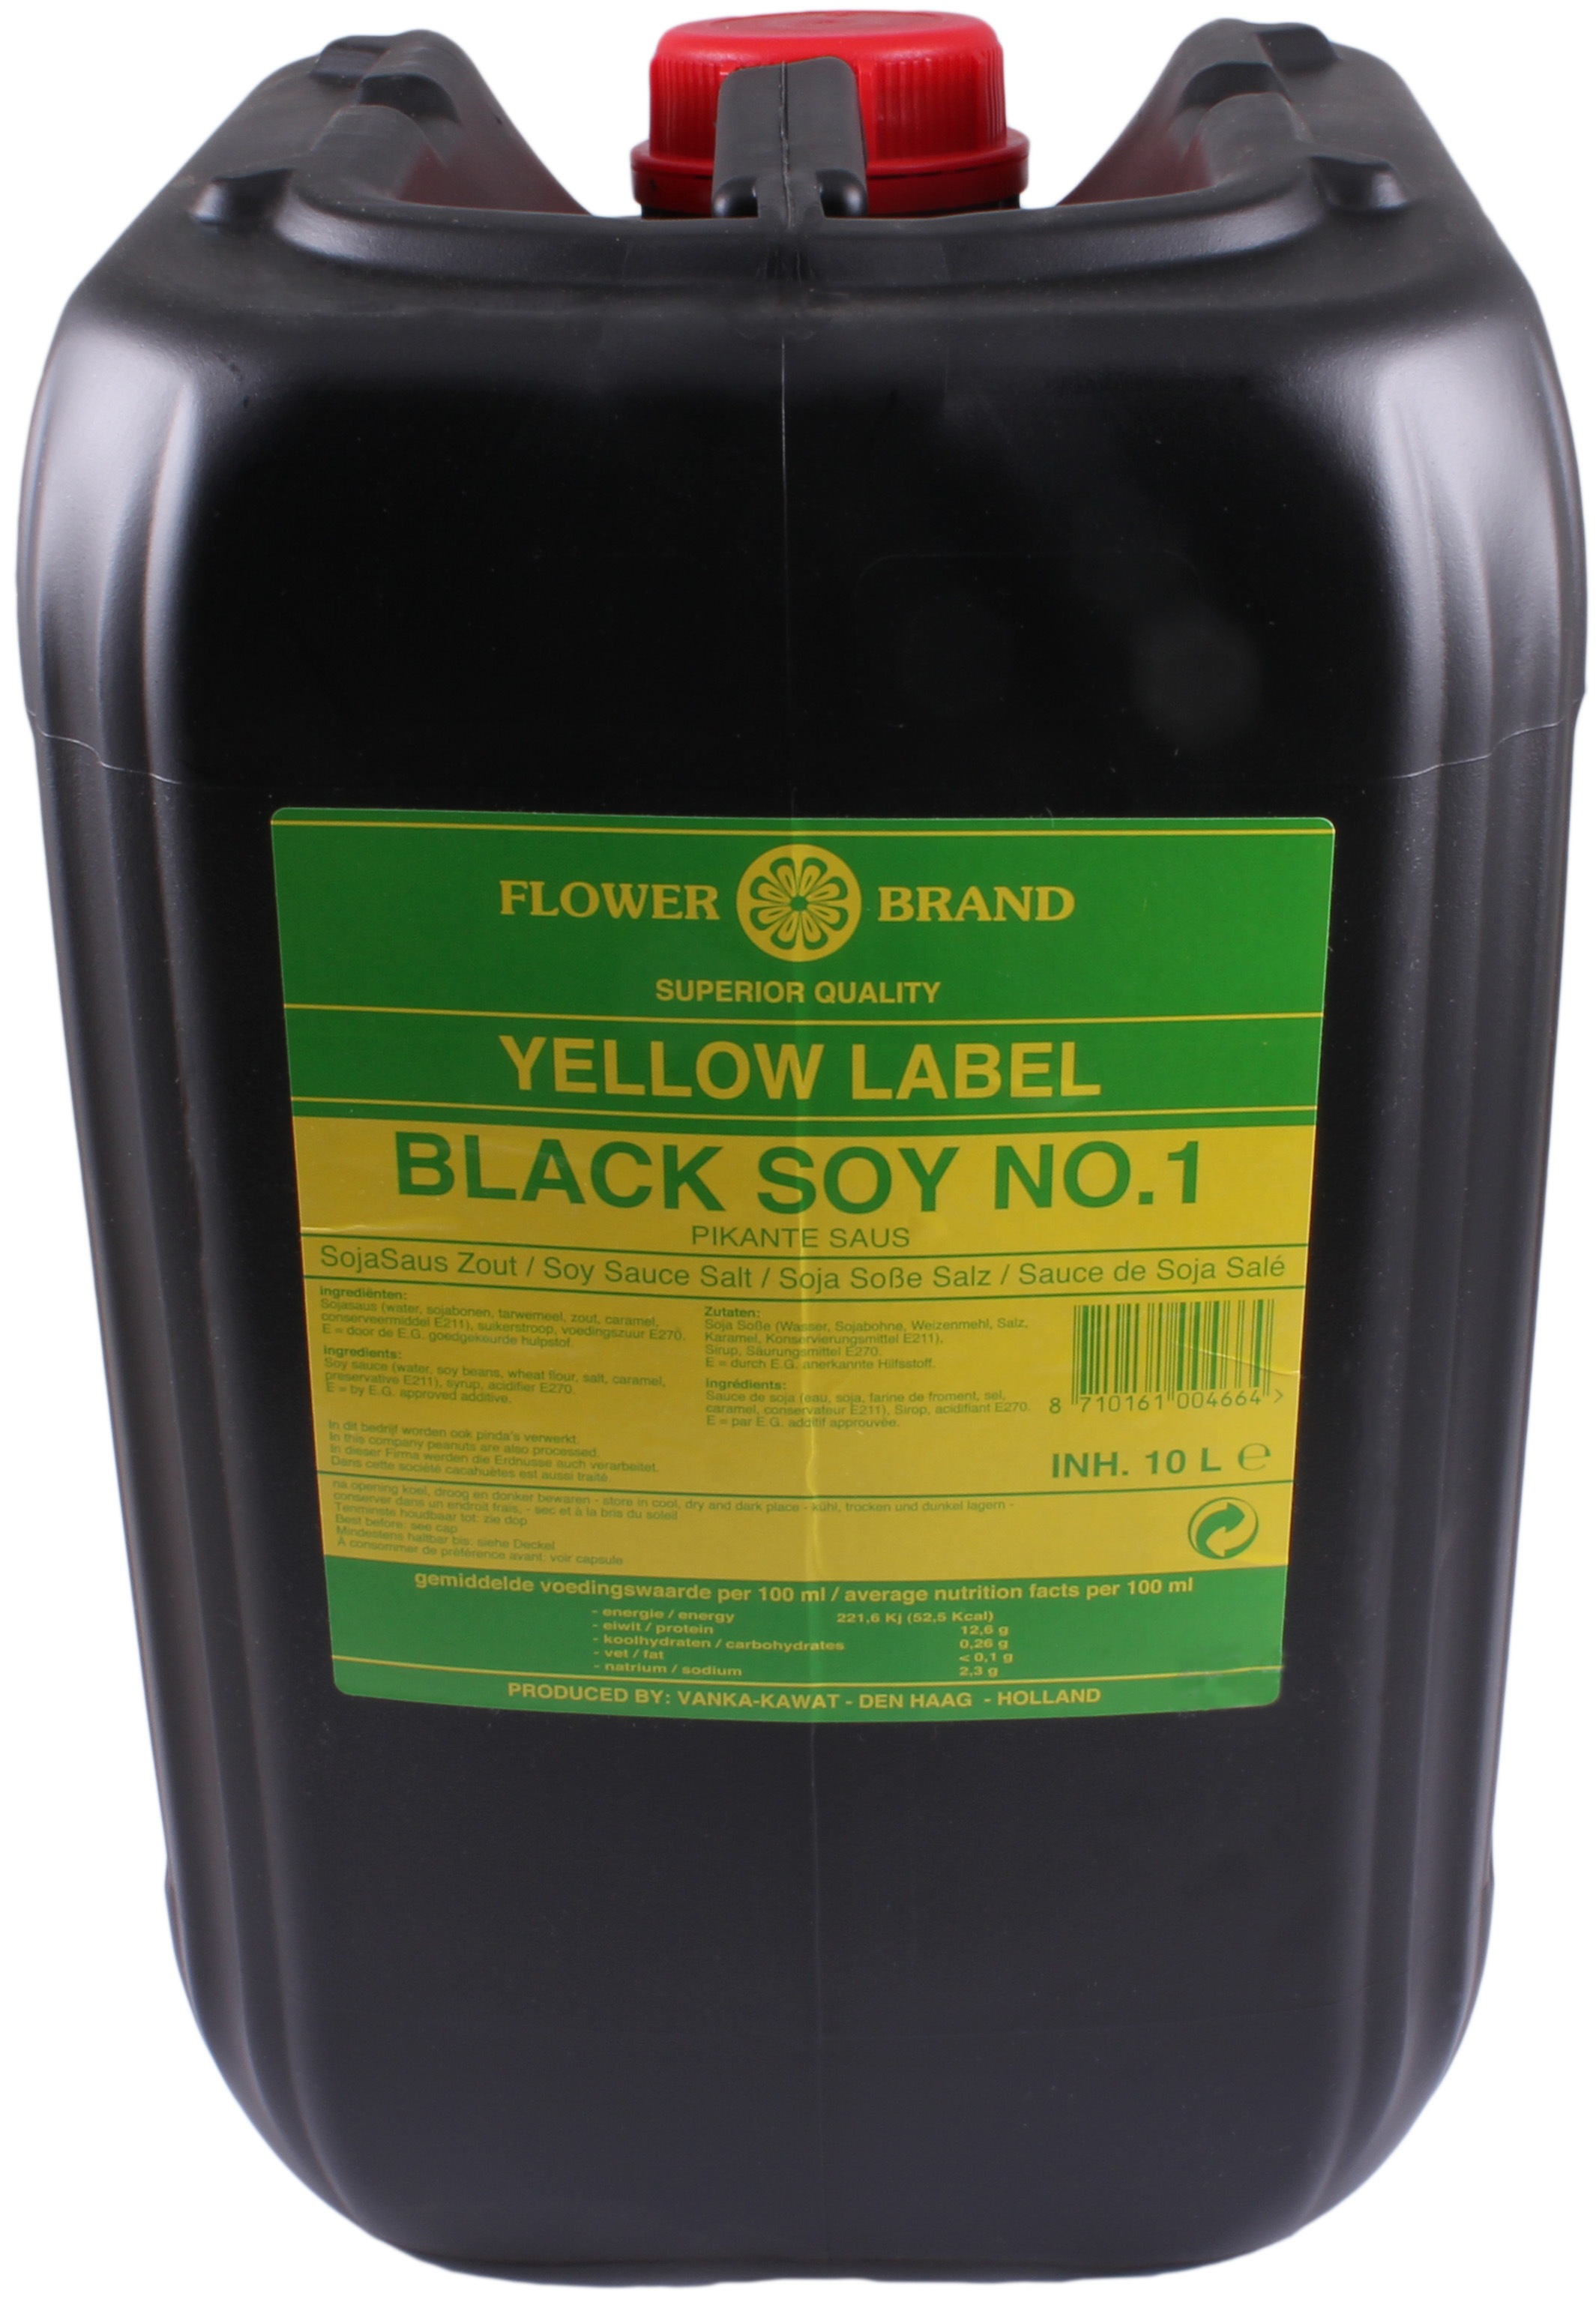 74819 Ketjap black soy no.1 can 1x10 ltr